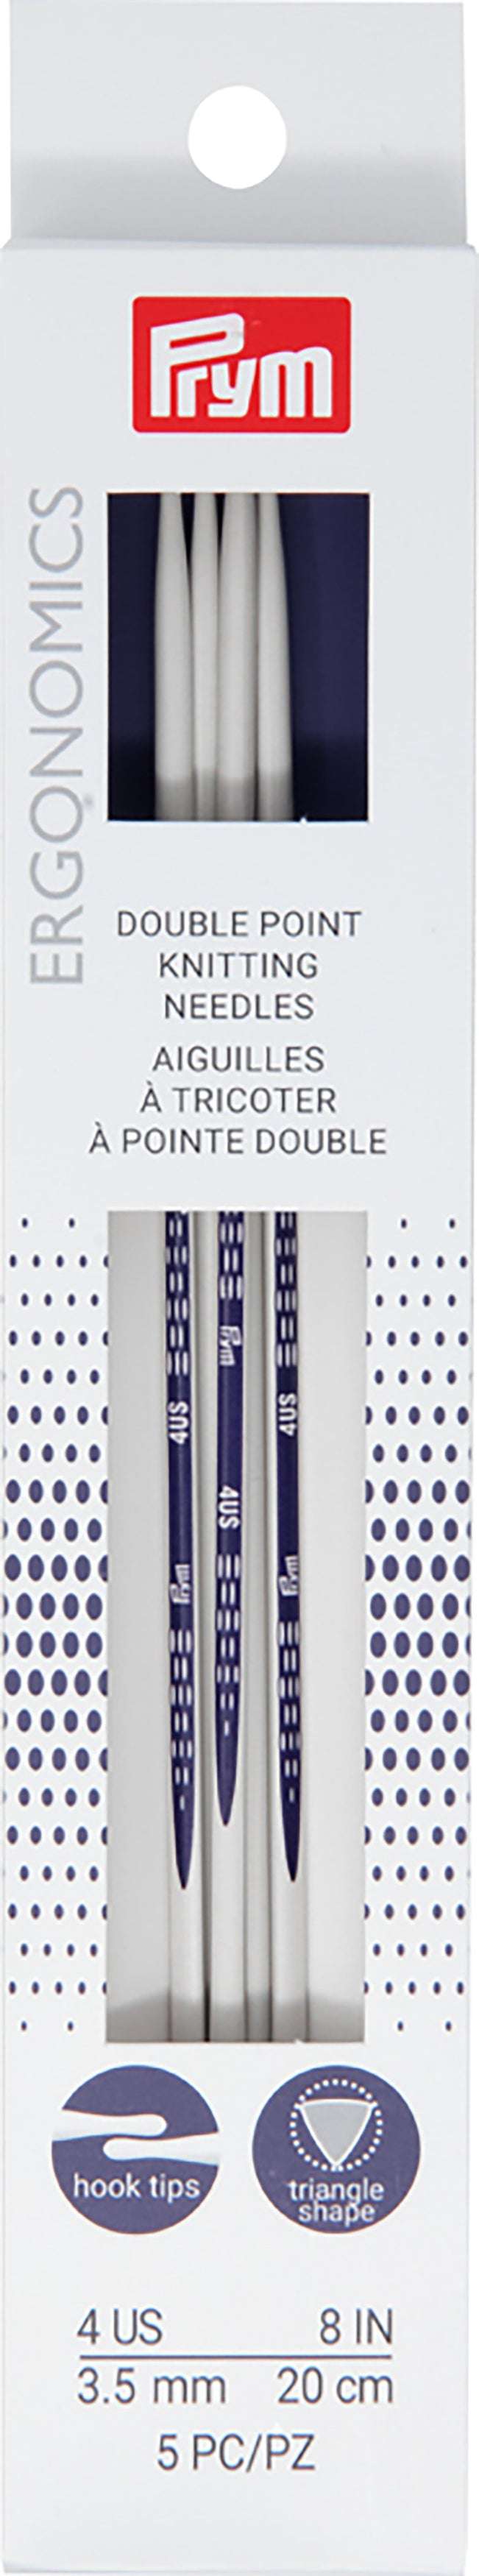 Prym Ergonomic Double Pointed Knitting Needles (Set of 5)